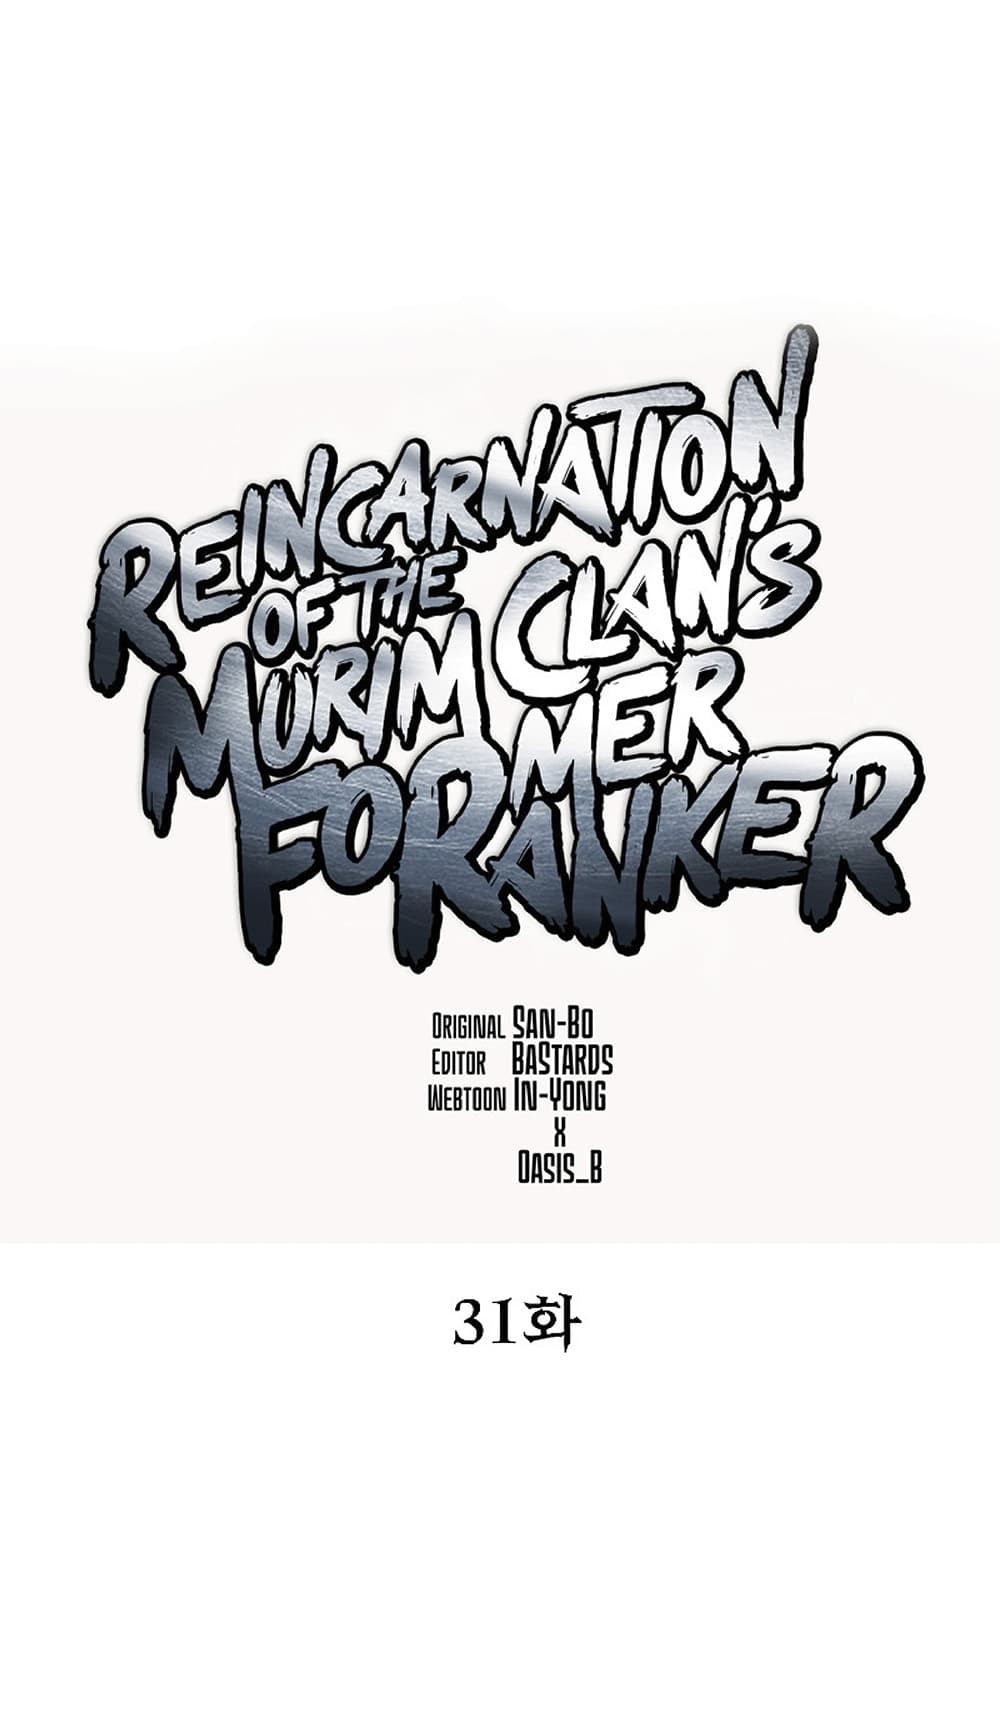 Reincarnation-of-the-Murim-Clans-Former-Ranker--31-26.jpg